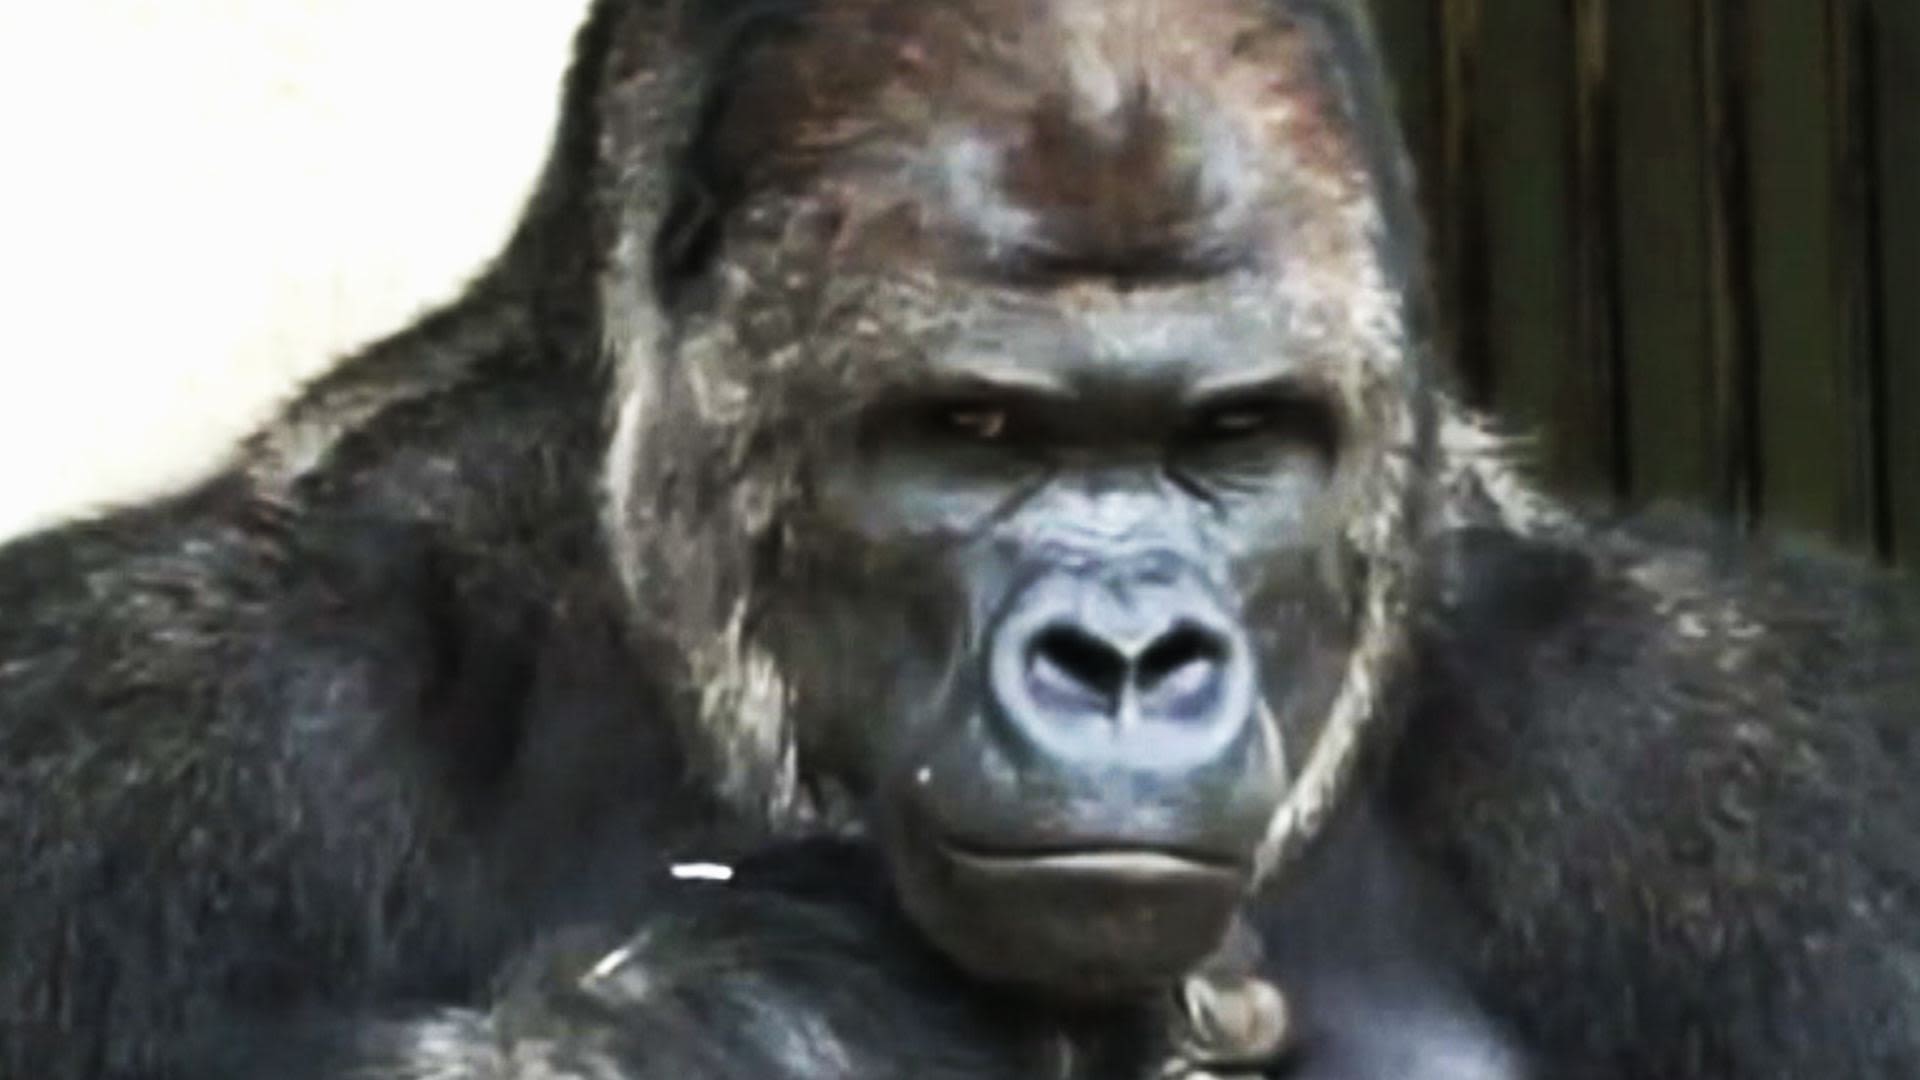 1920px x 1080px - Women flock to 'handsome' gorilla | CNN